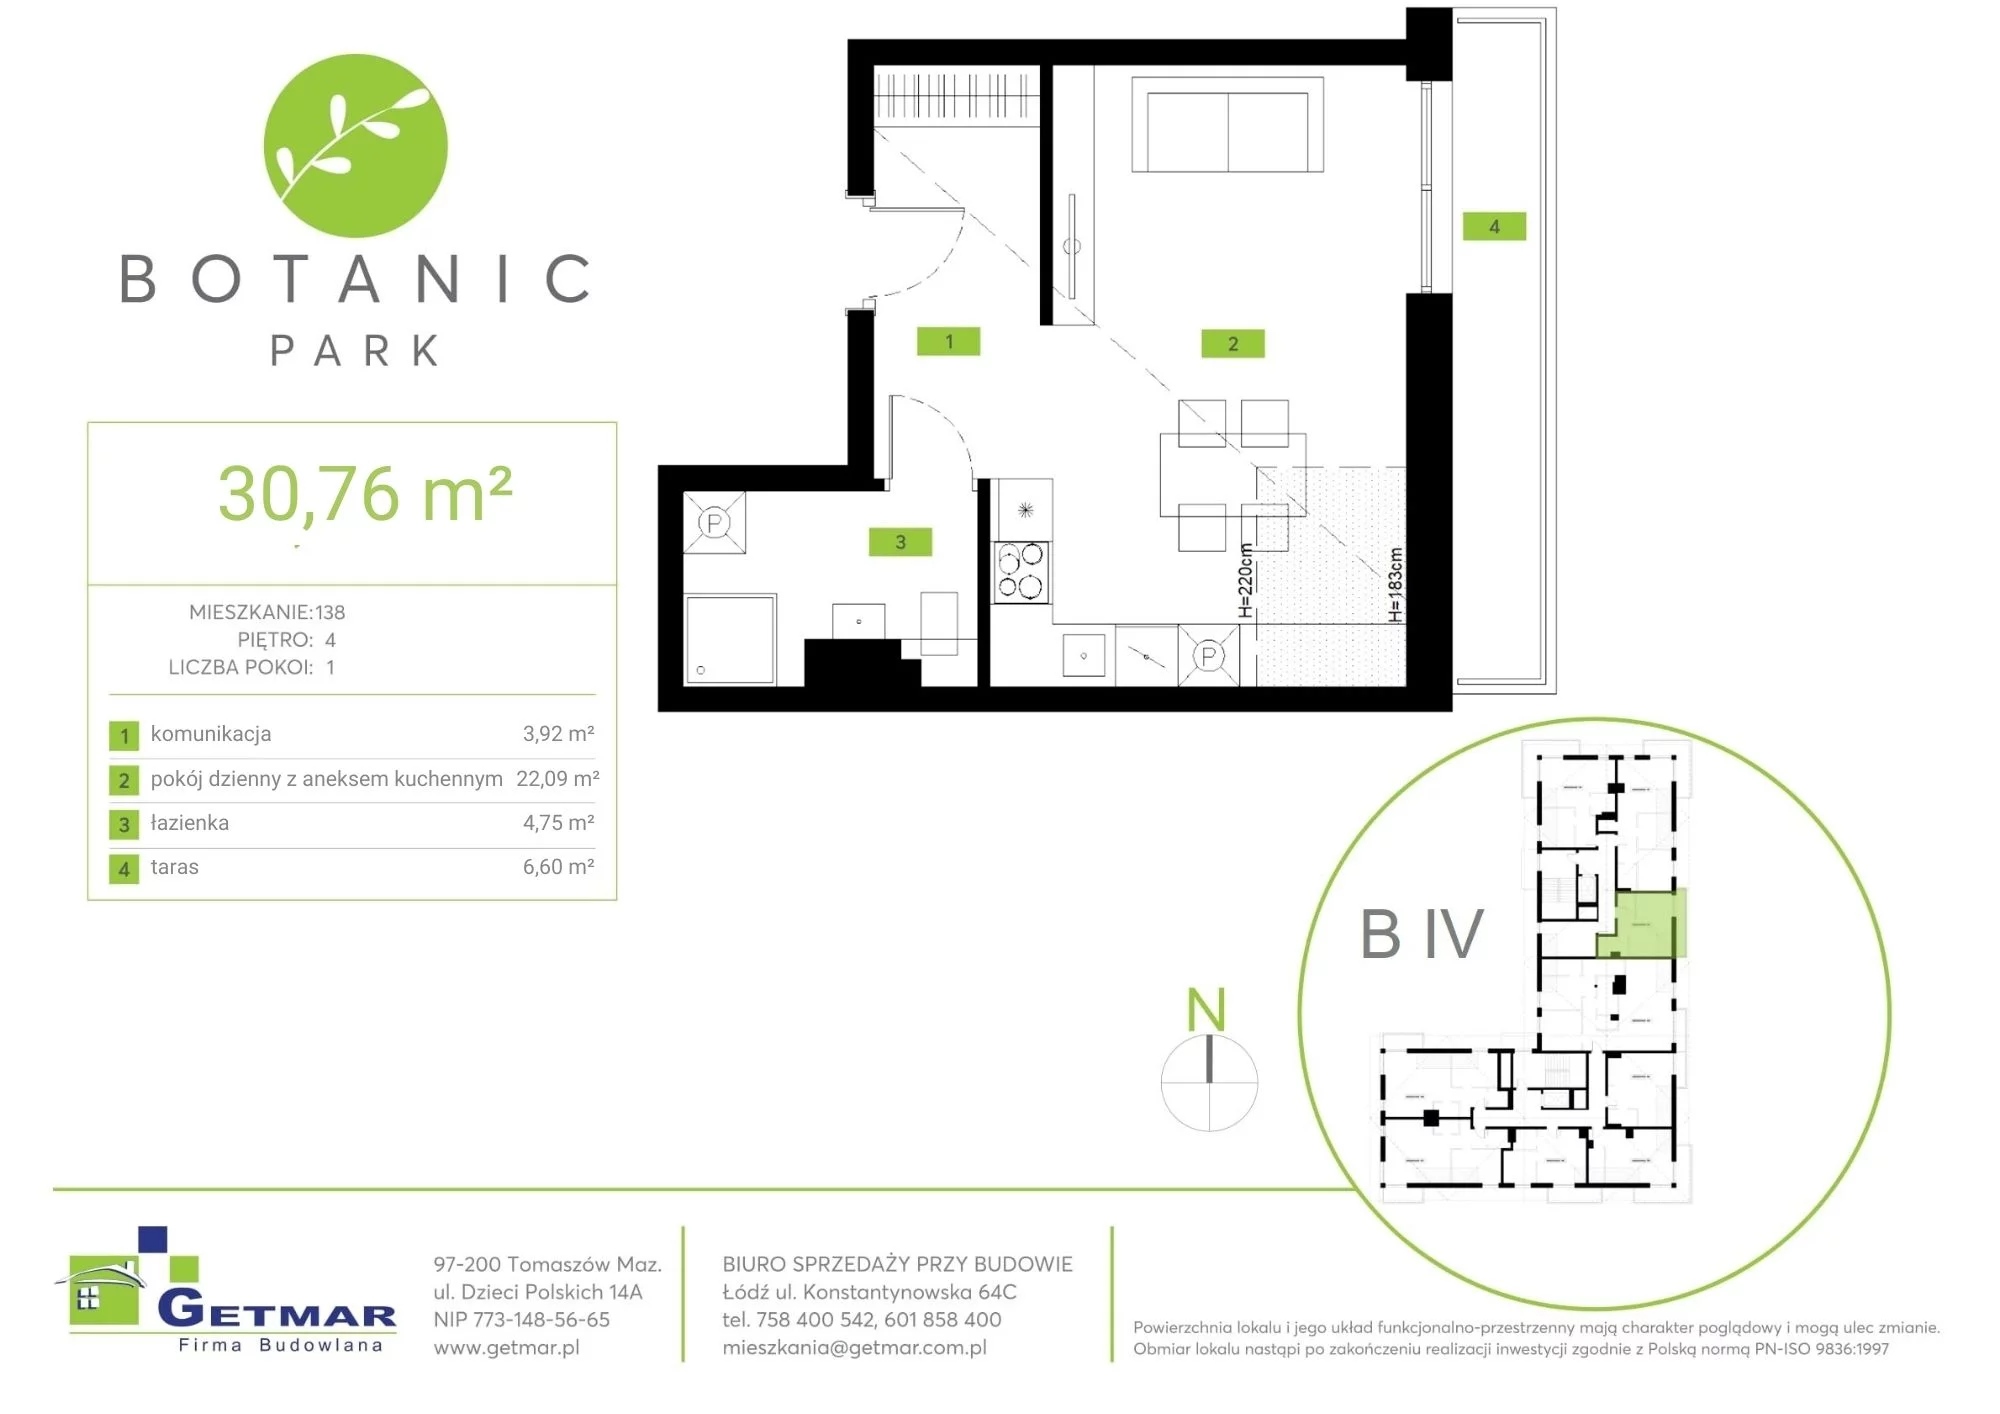 Mieszkanie 30,76 m², piętro 4, oferta nr 138, Botanic Park, Łódź, Polesie, Złotno, ul. Konstantynowska 64c